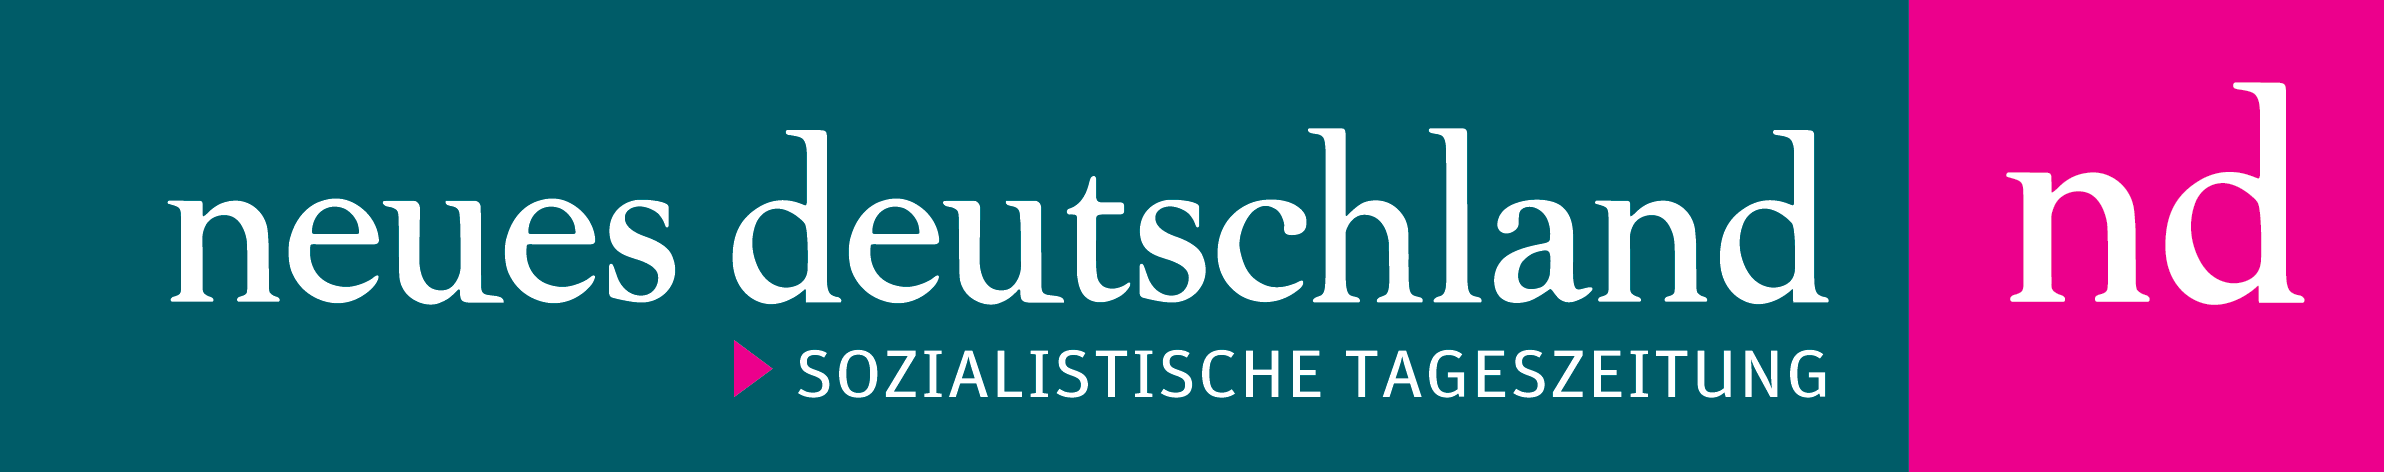 Dies ist das Logo der Zeitung Neues Deutschland.